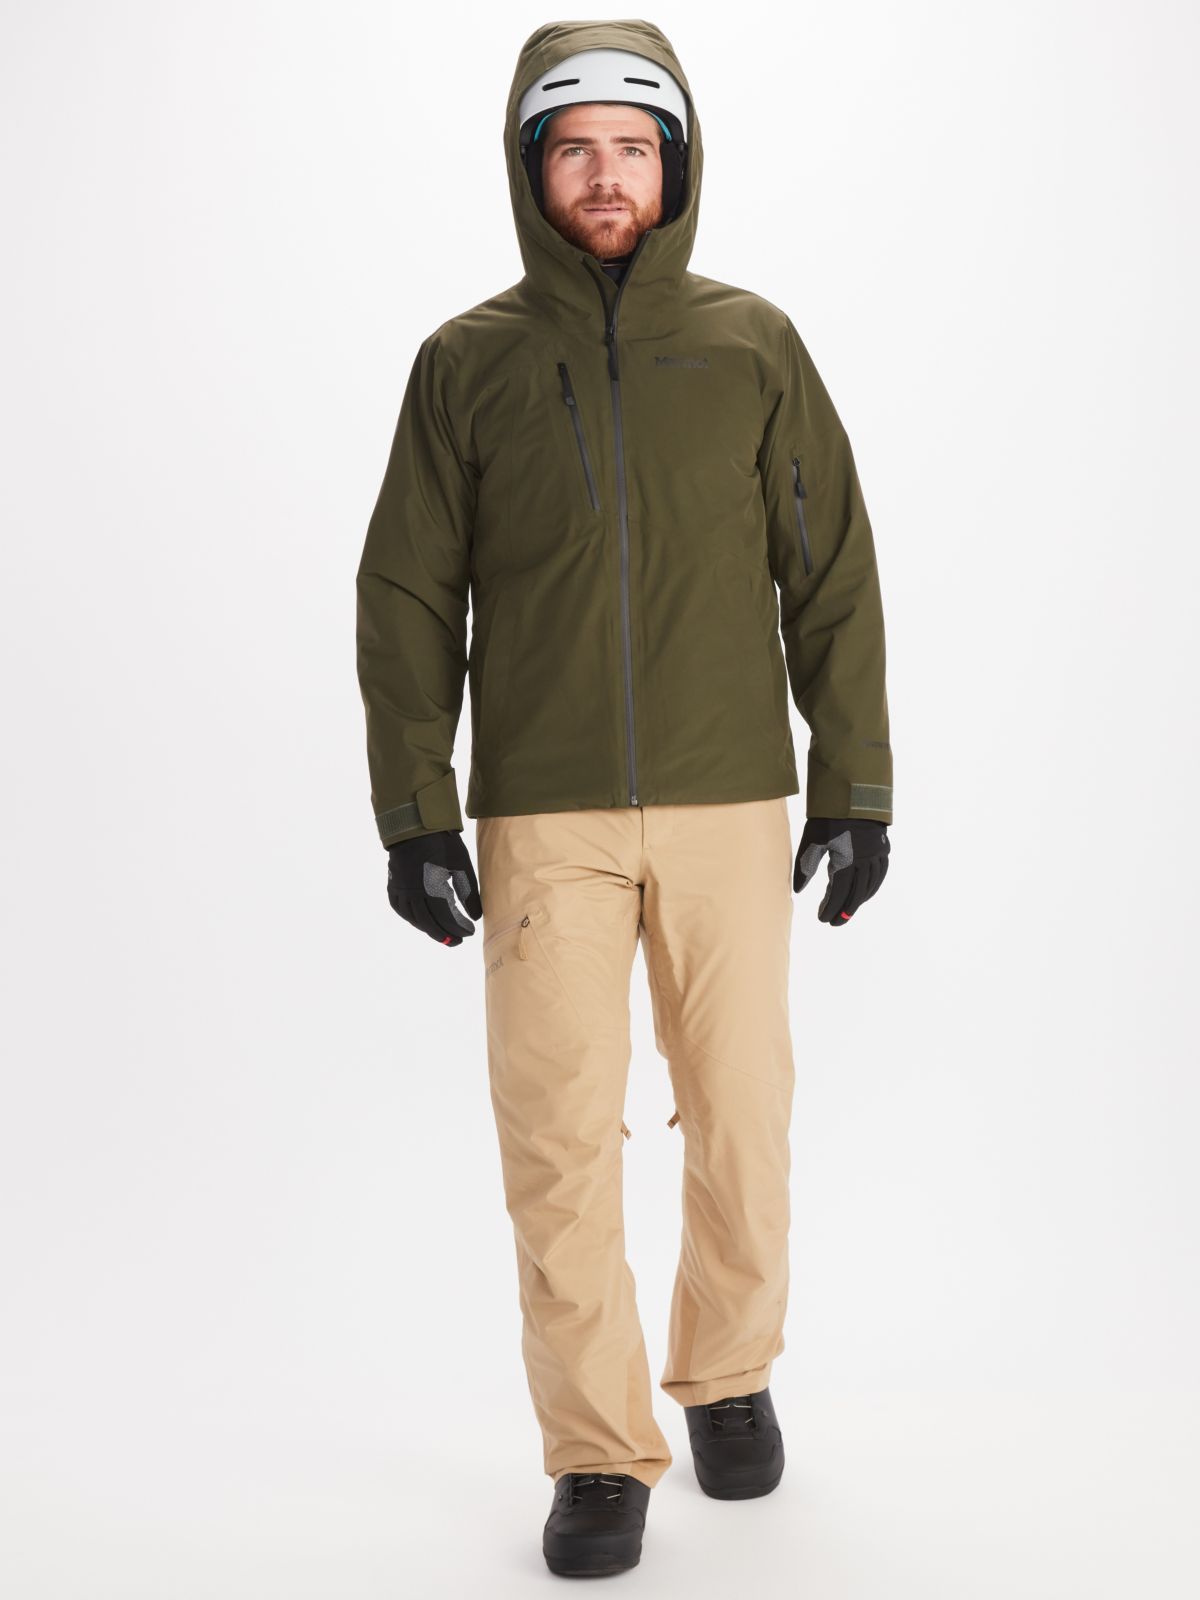 Man walking wears Marmot mens ski jacket in dark green